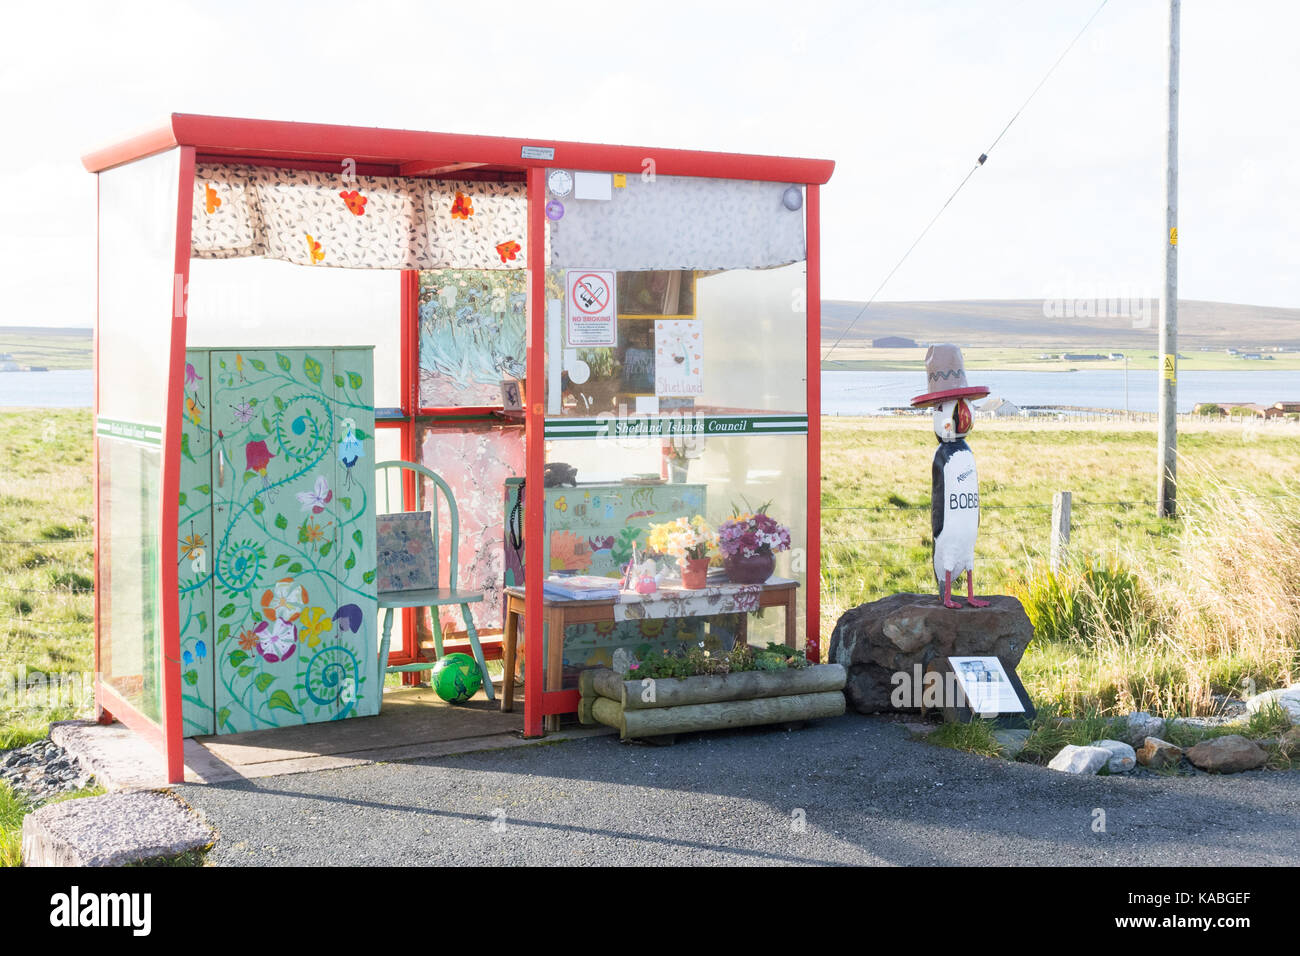 L'arrêt de bus - une attraction touristique de Unst, shetland, Scotland, UK Banque D'Images